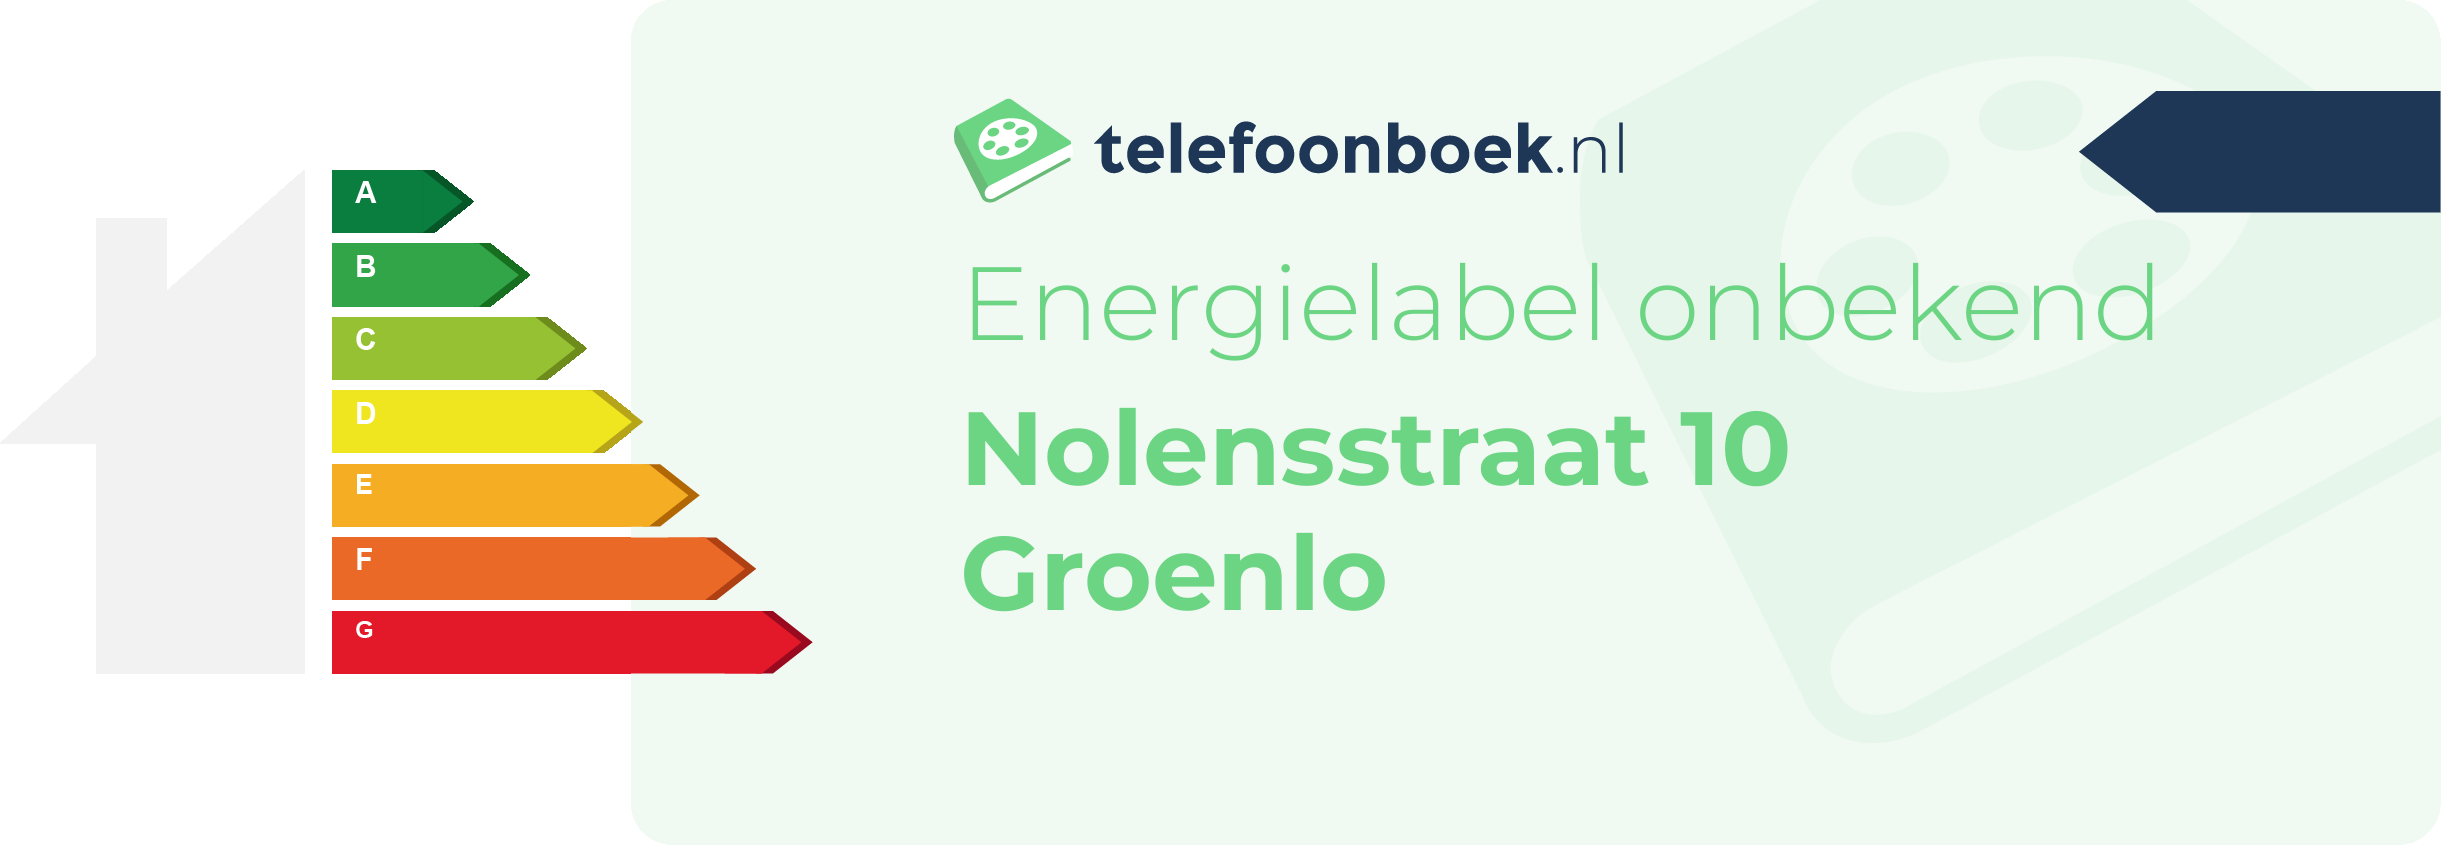 Energielabel Nolensstraat 10 Groenlo